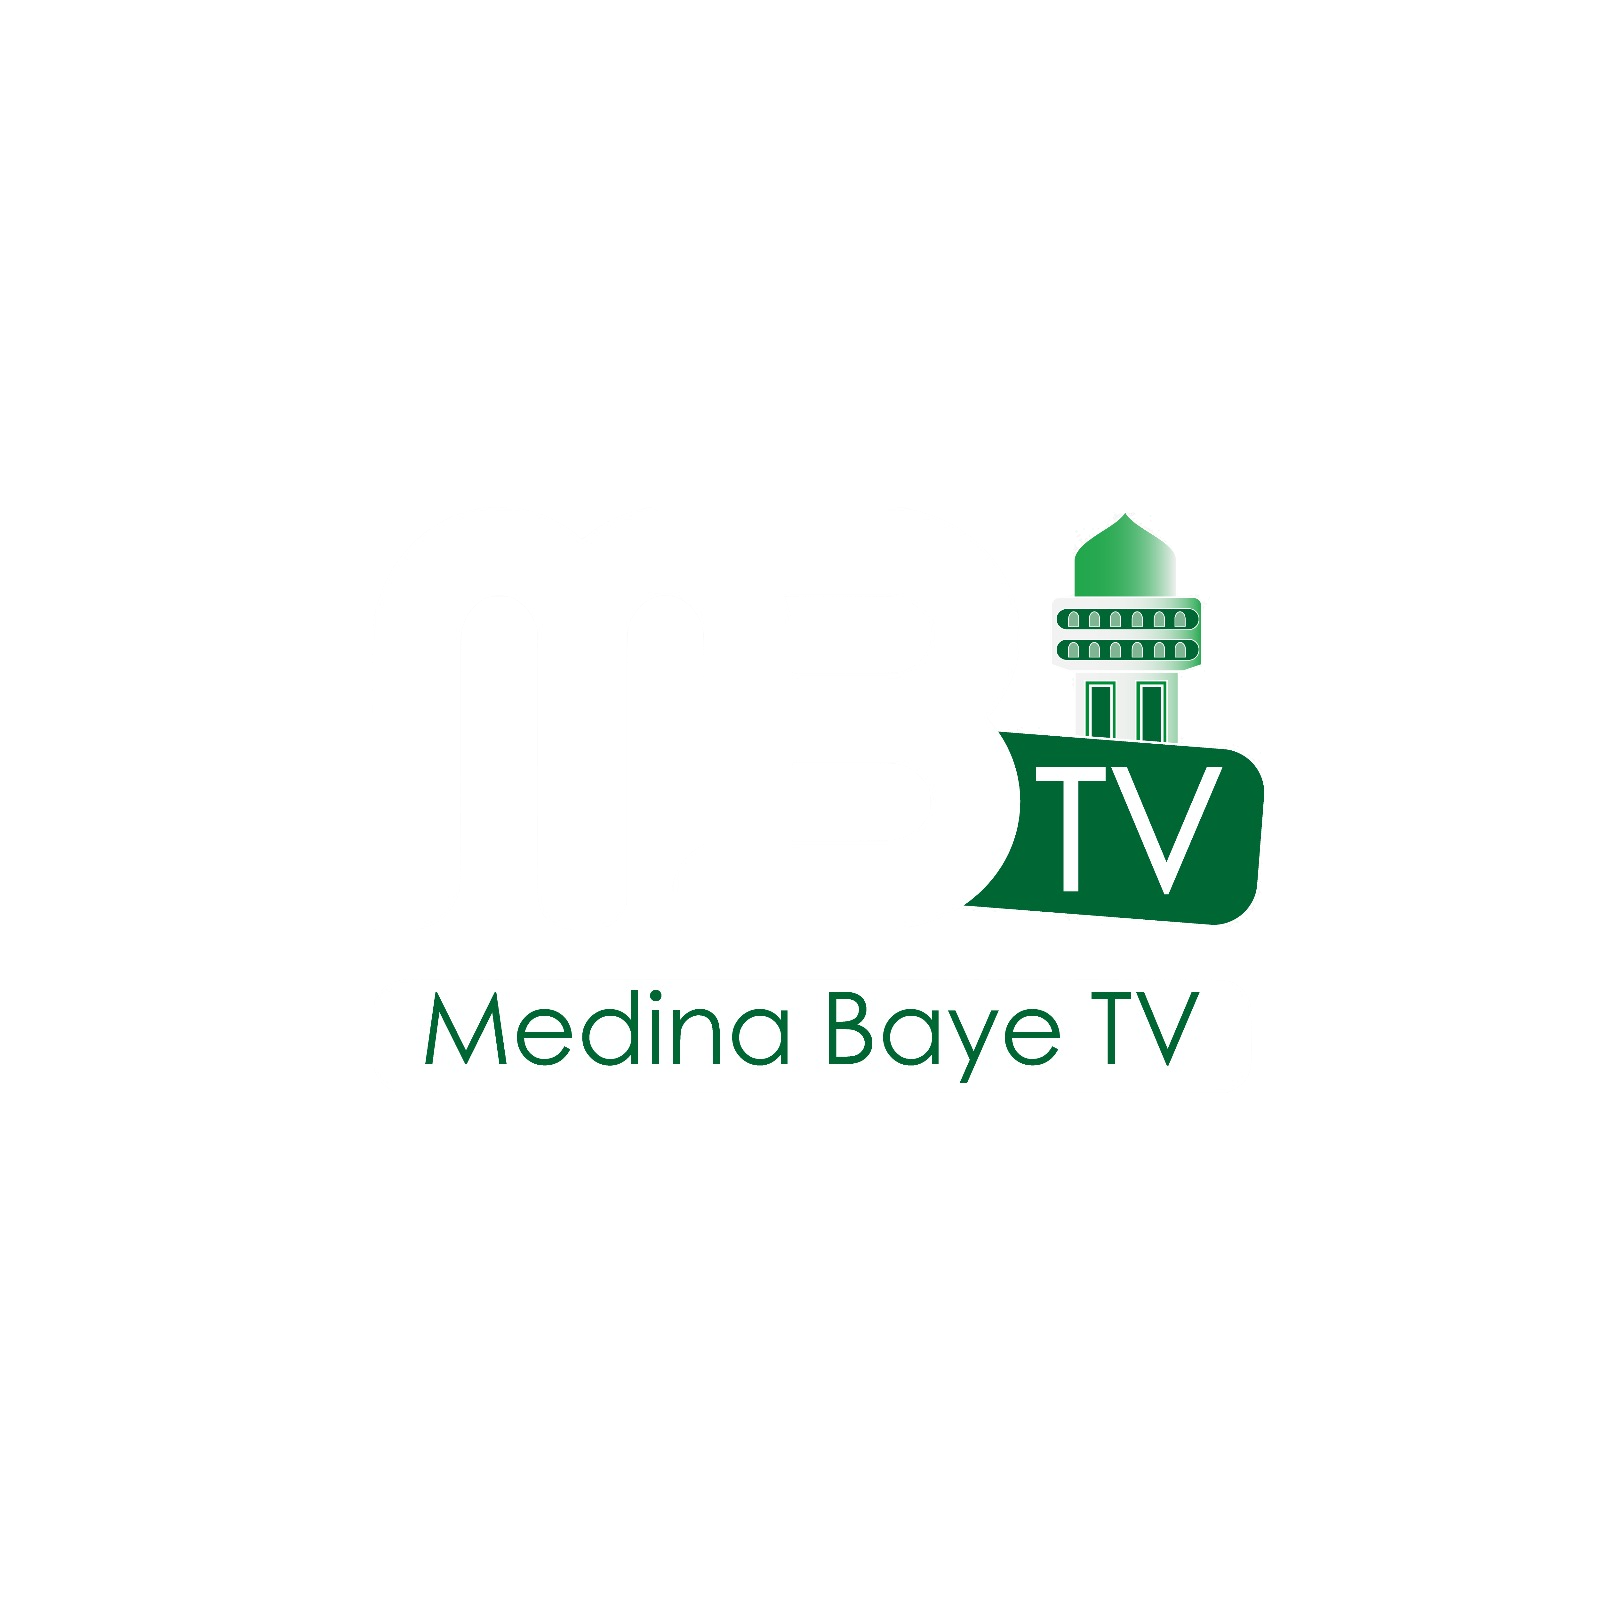 MEDINA BAYE TV